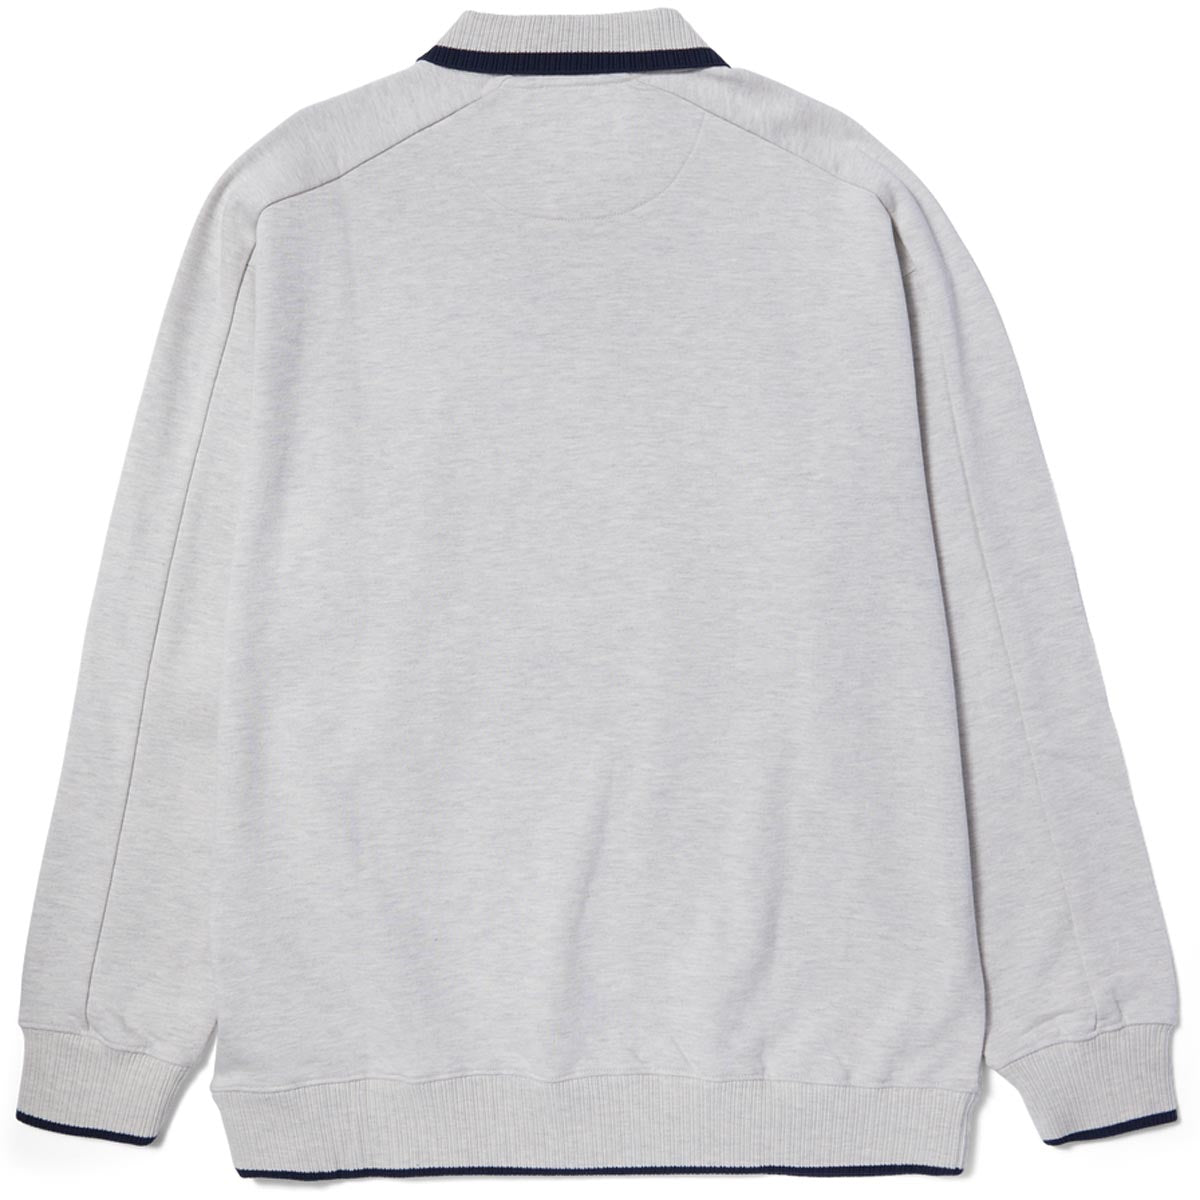 HUF Essex Polo Fleece Sweatshirt - Heather Grey image 2